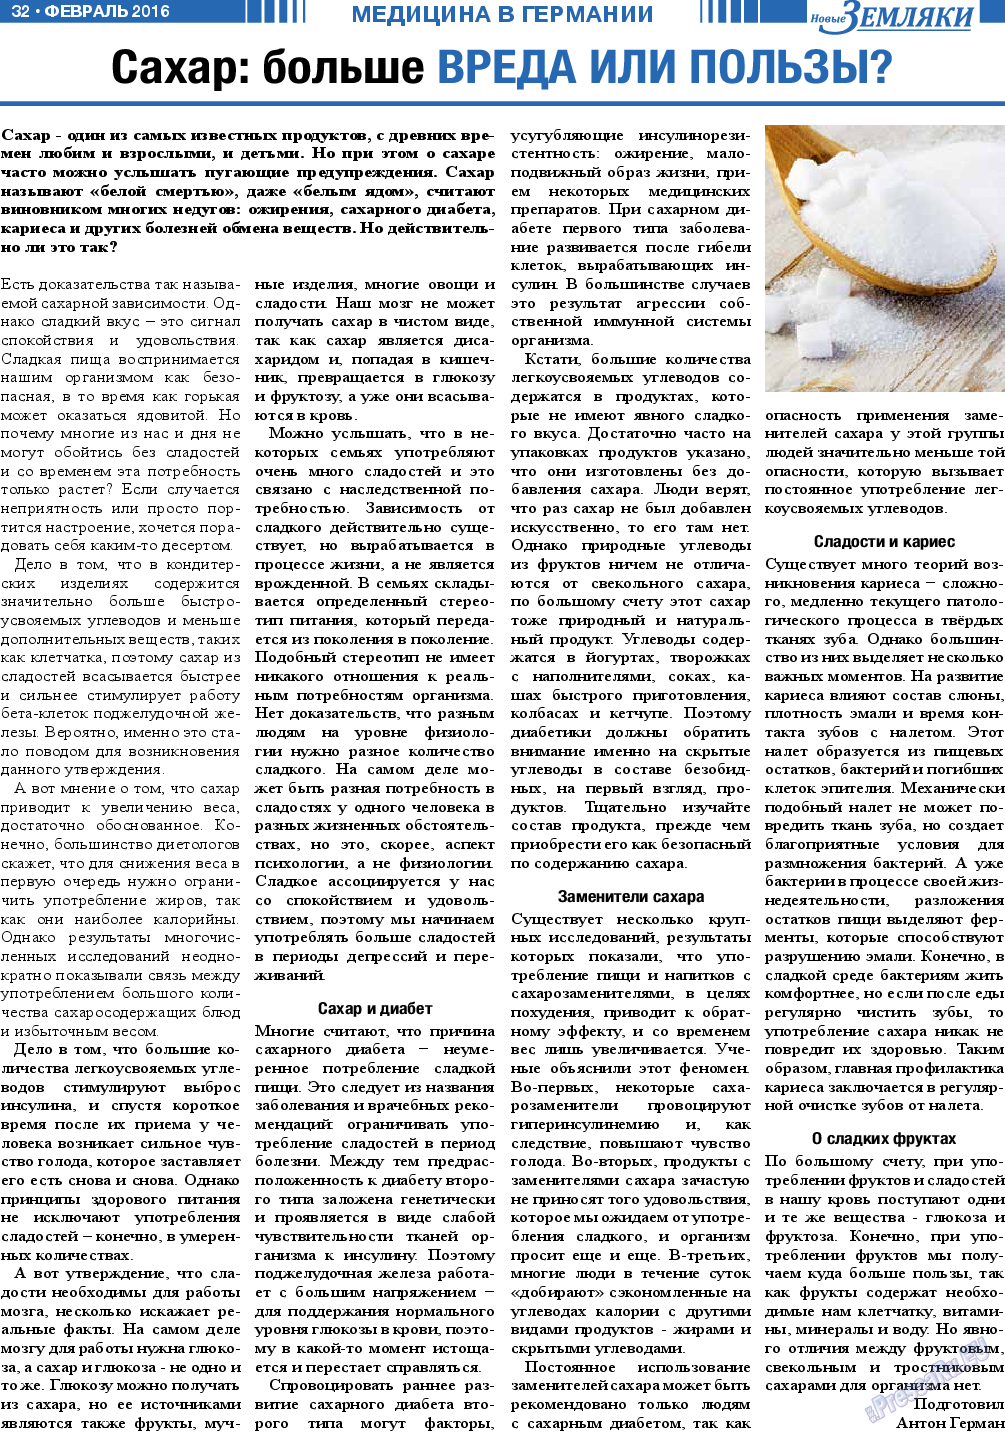 Новые Земляки (газета). 2016 год, номер 2, стр. 32